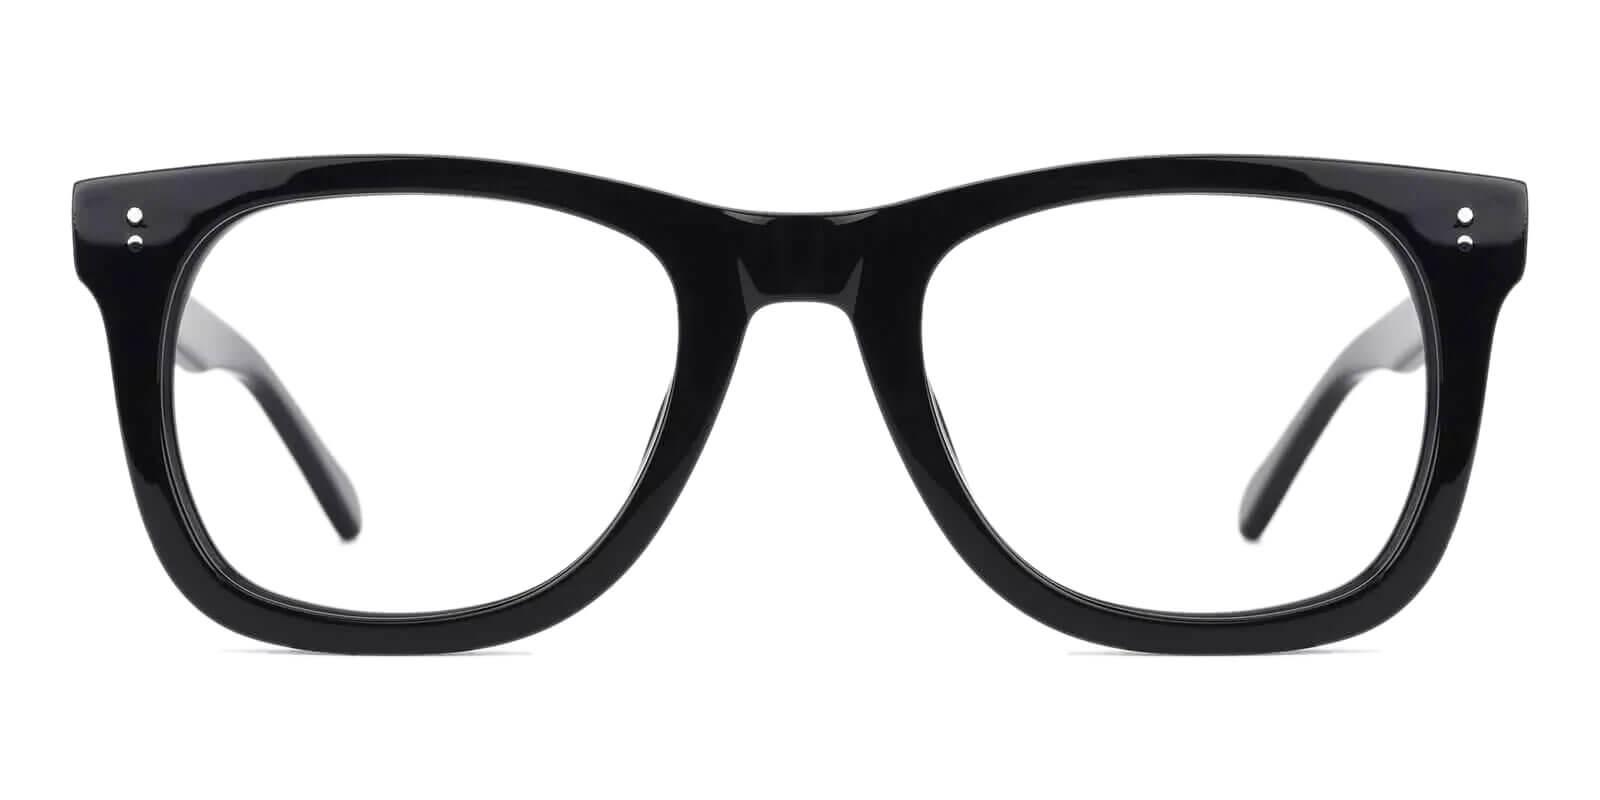 Dean Black Acetate Eyeglasses , UniversalBridgeFit Frames from ABBE Glasses